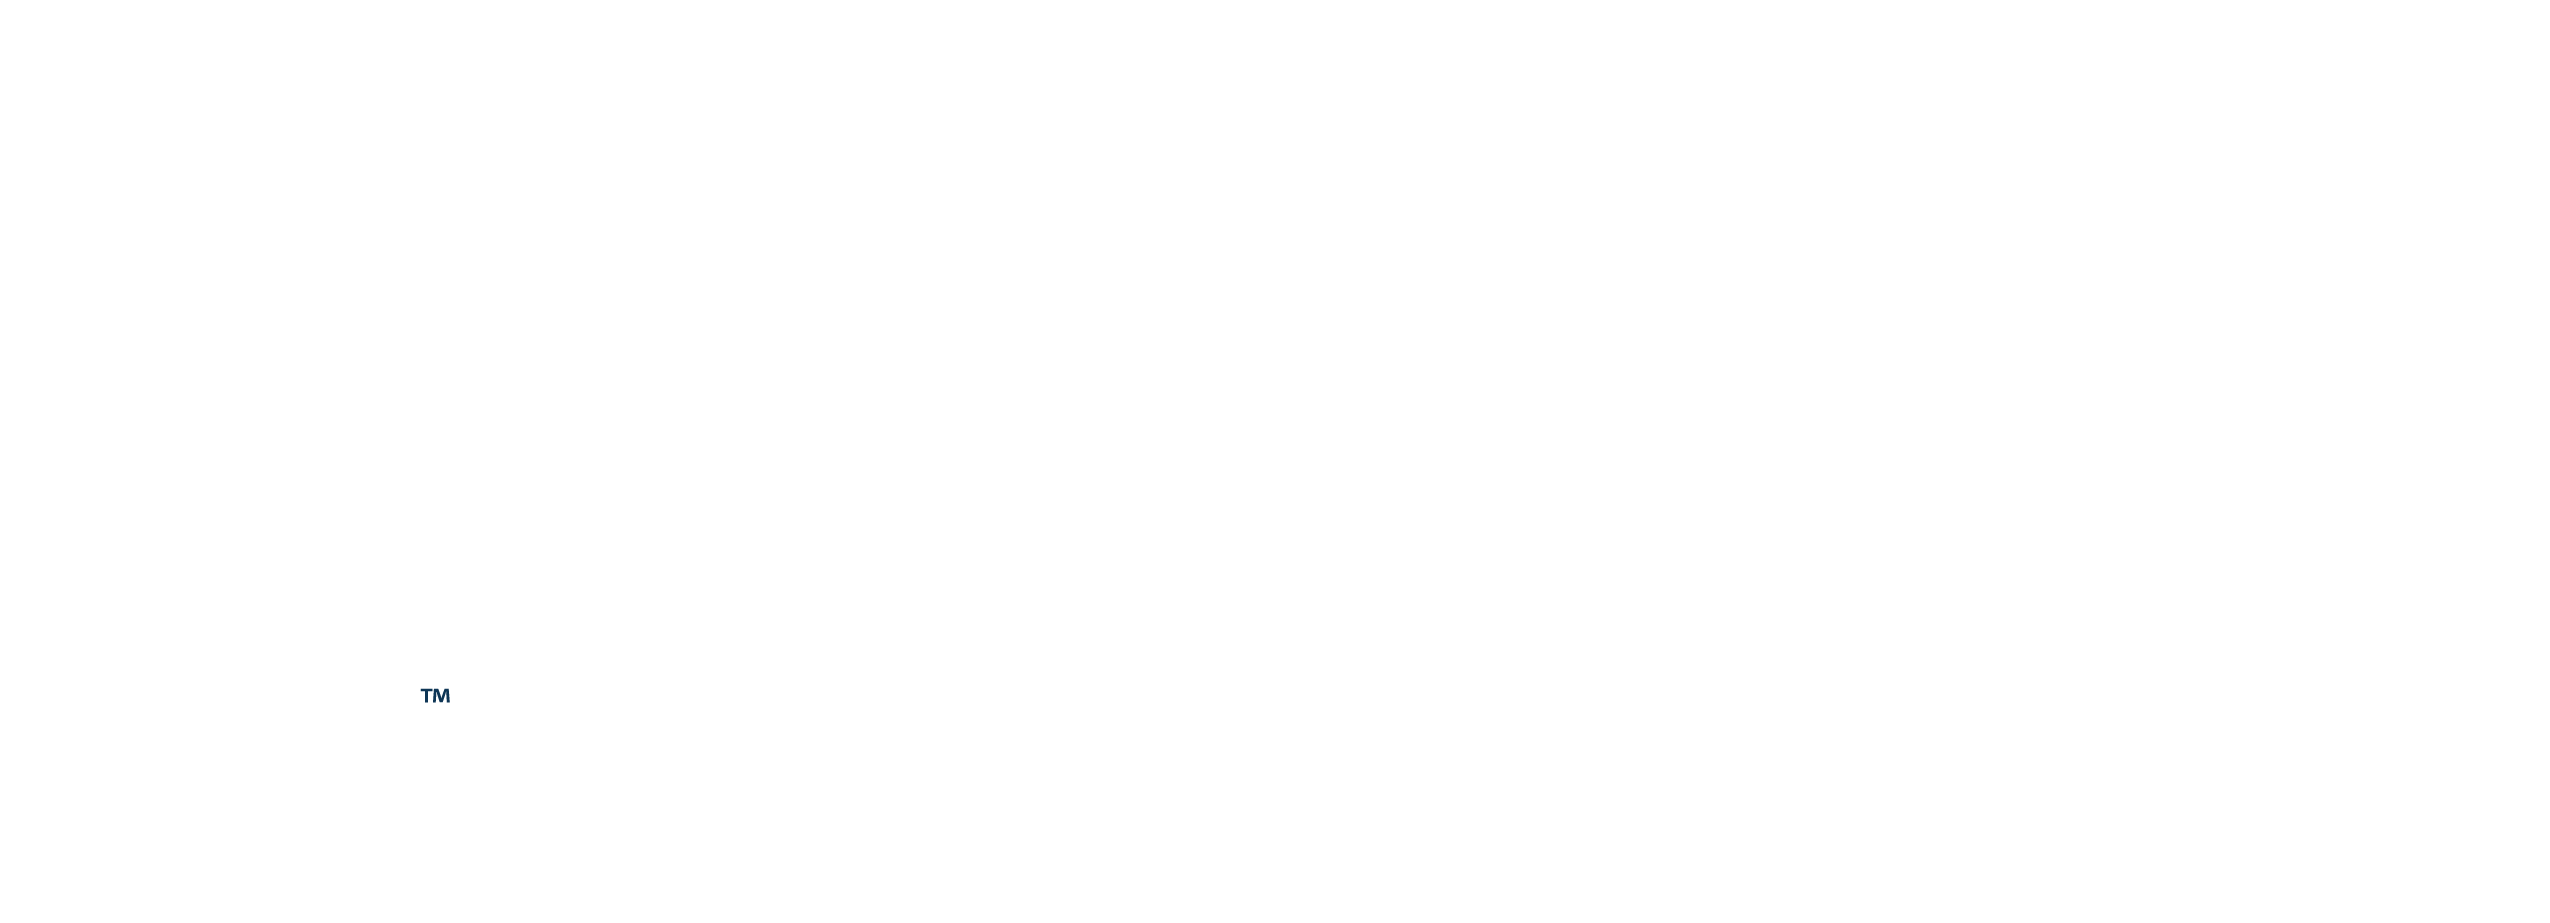 Astra living logo - white